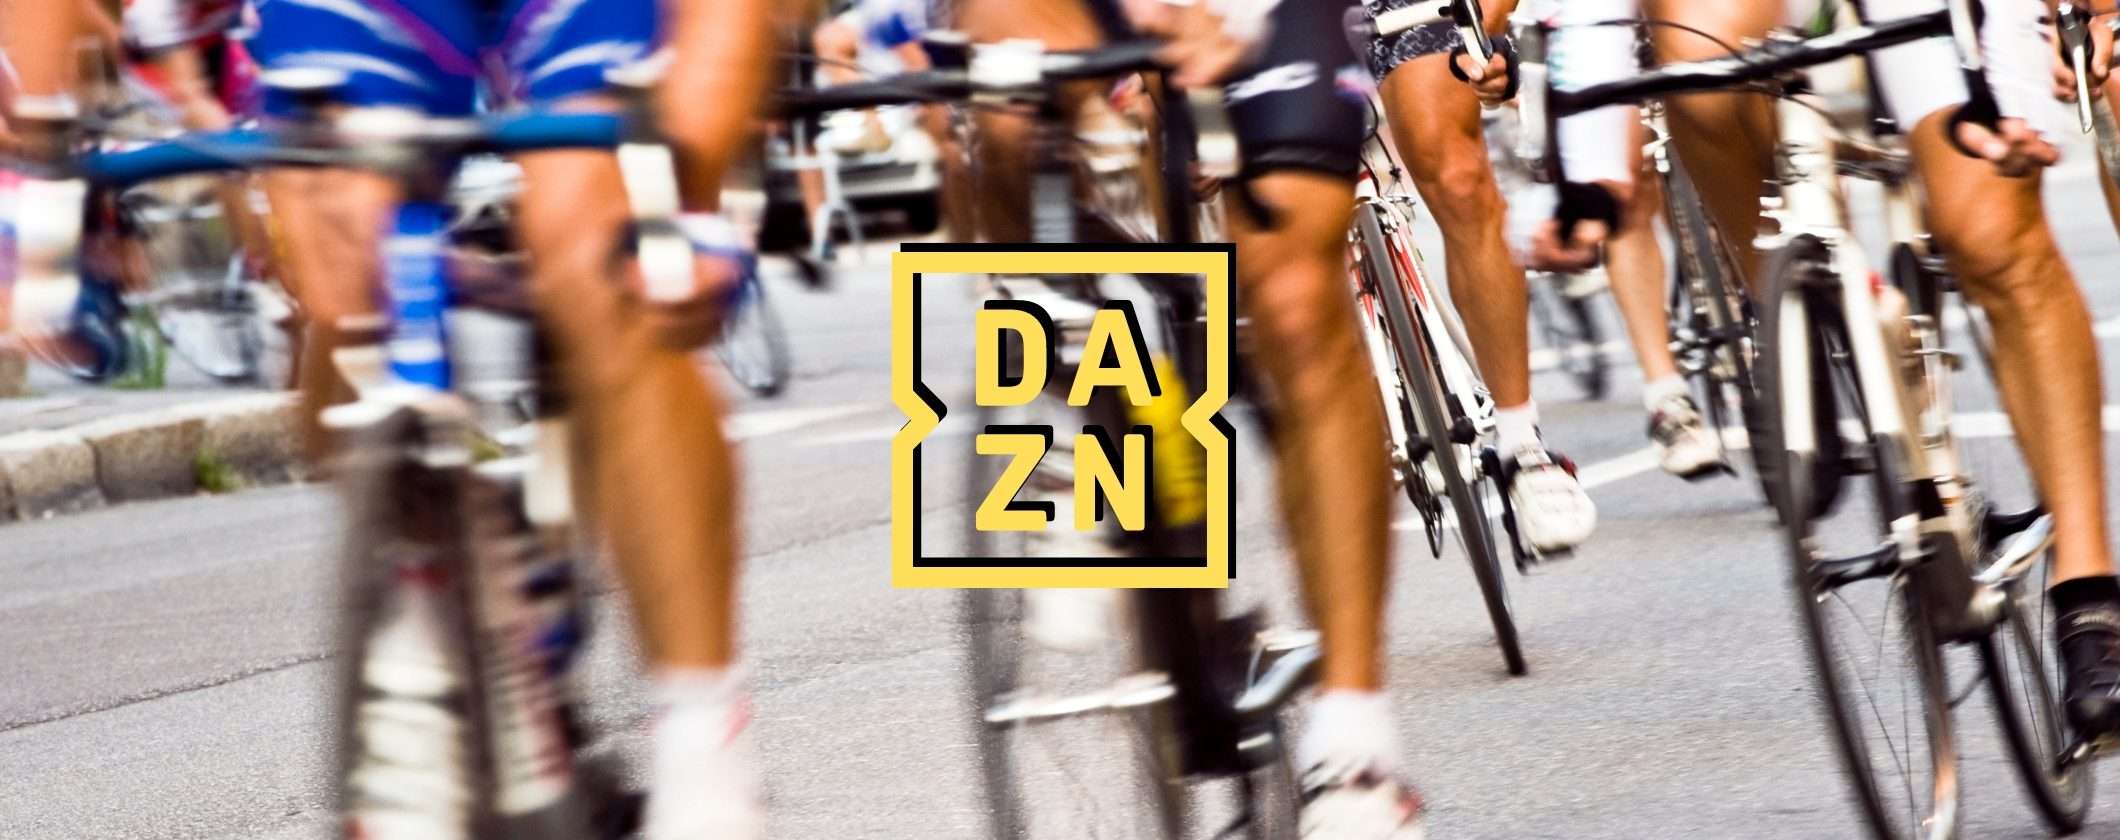 DAZN e Tour de France: scegli l'offerta vincente